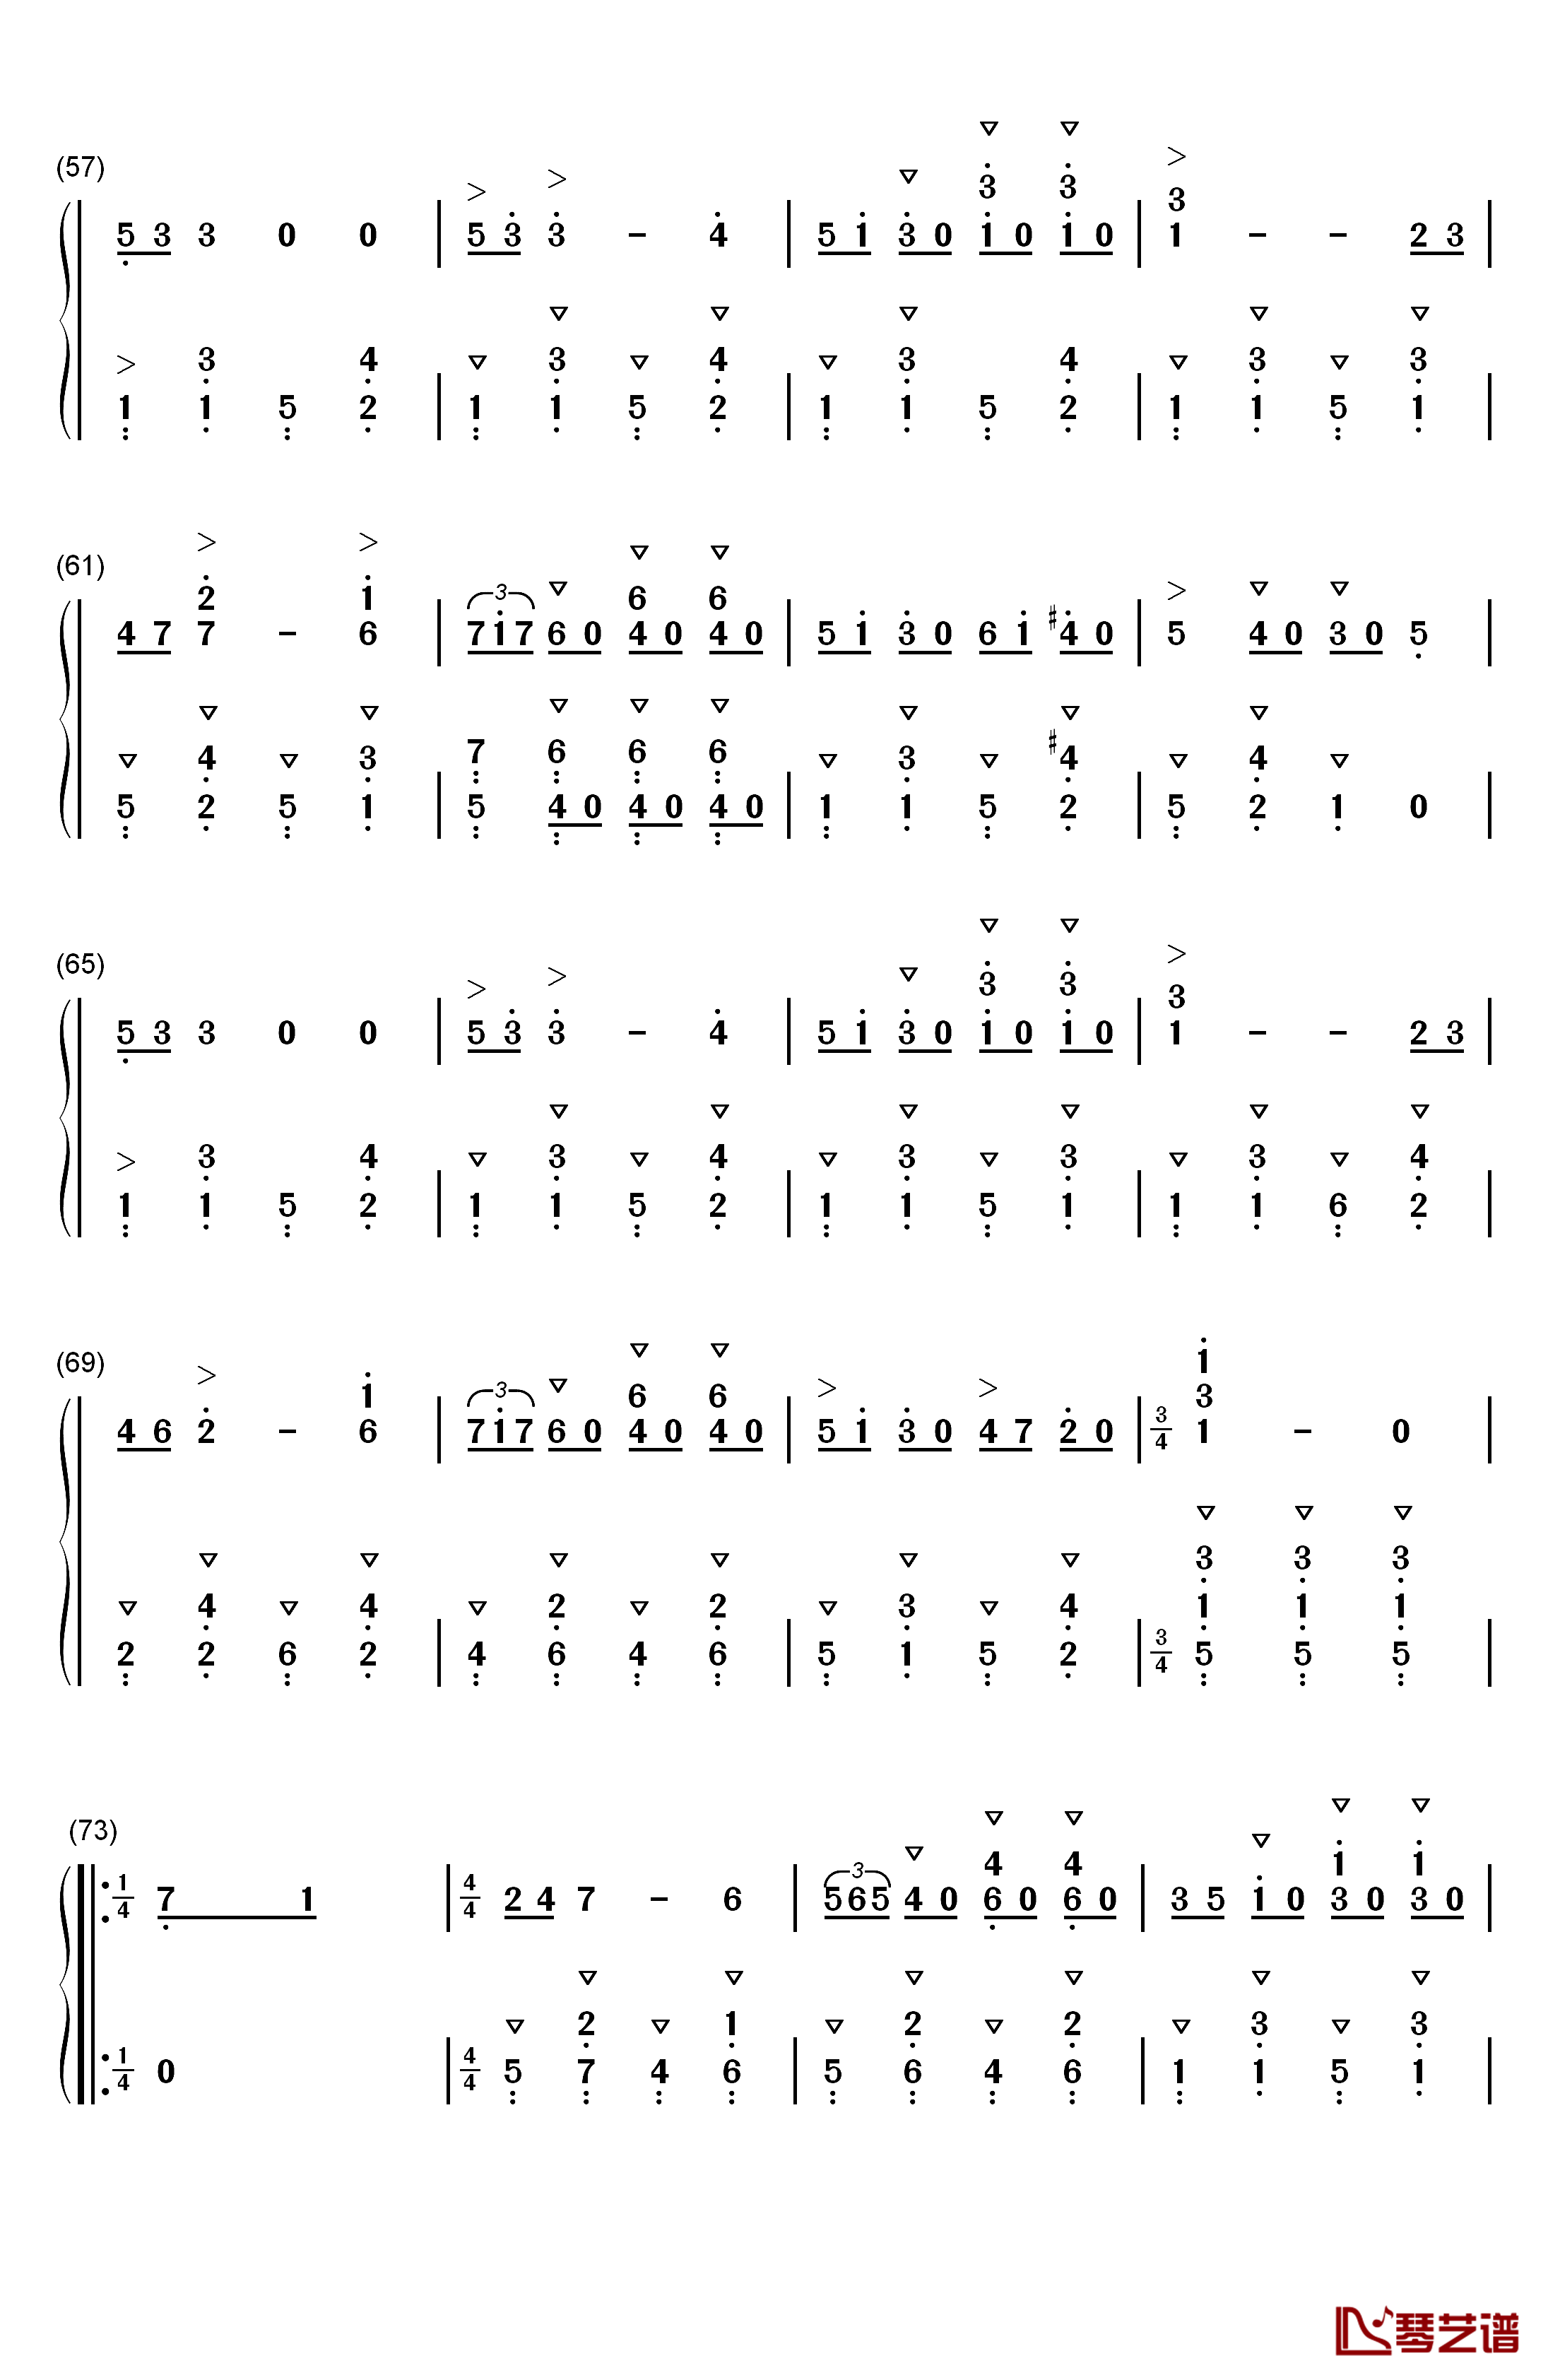 拉德斯基进行曲钢琴简谱-数字双手-约翰·施特劳斯  Johann Strauss Sr.4